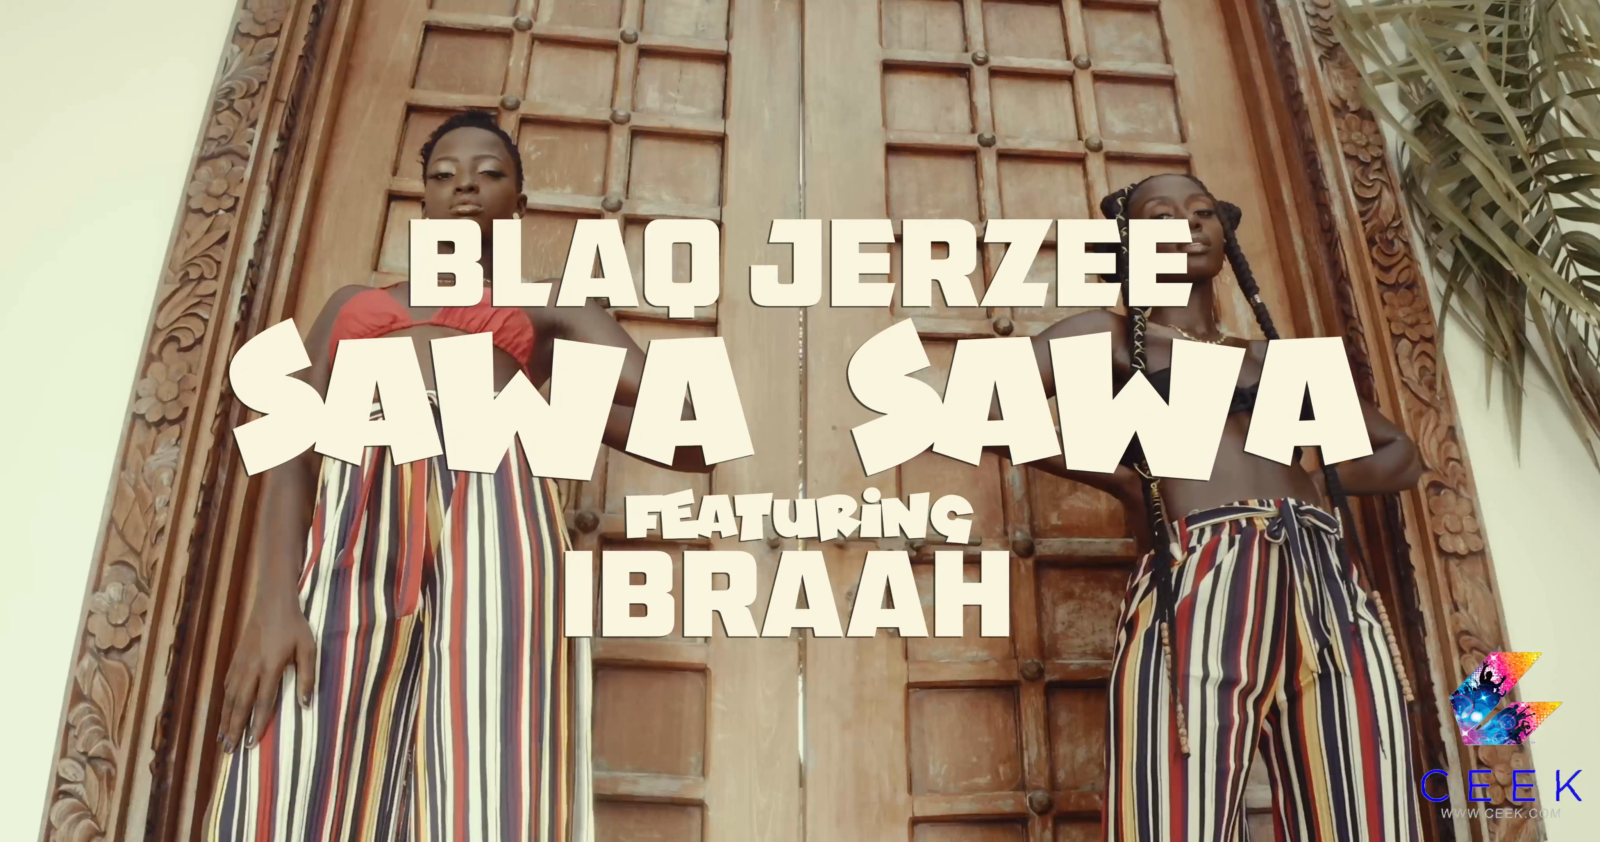 SAWA SAWA - Blaq Jerzee ft. Ibraah